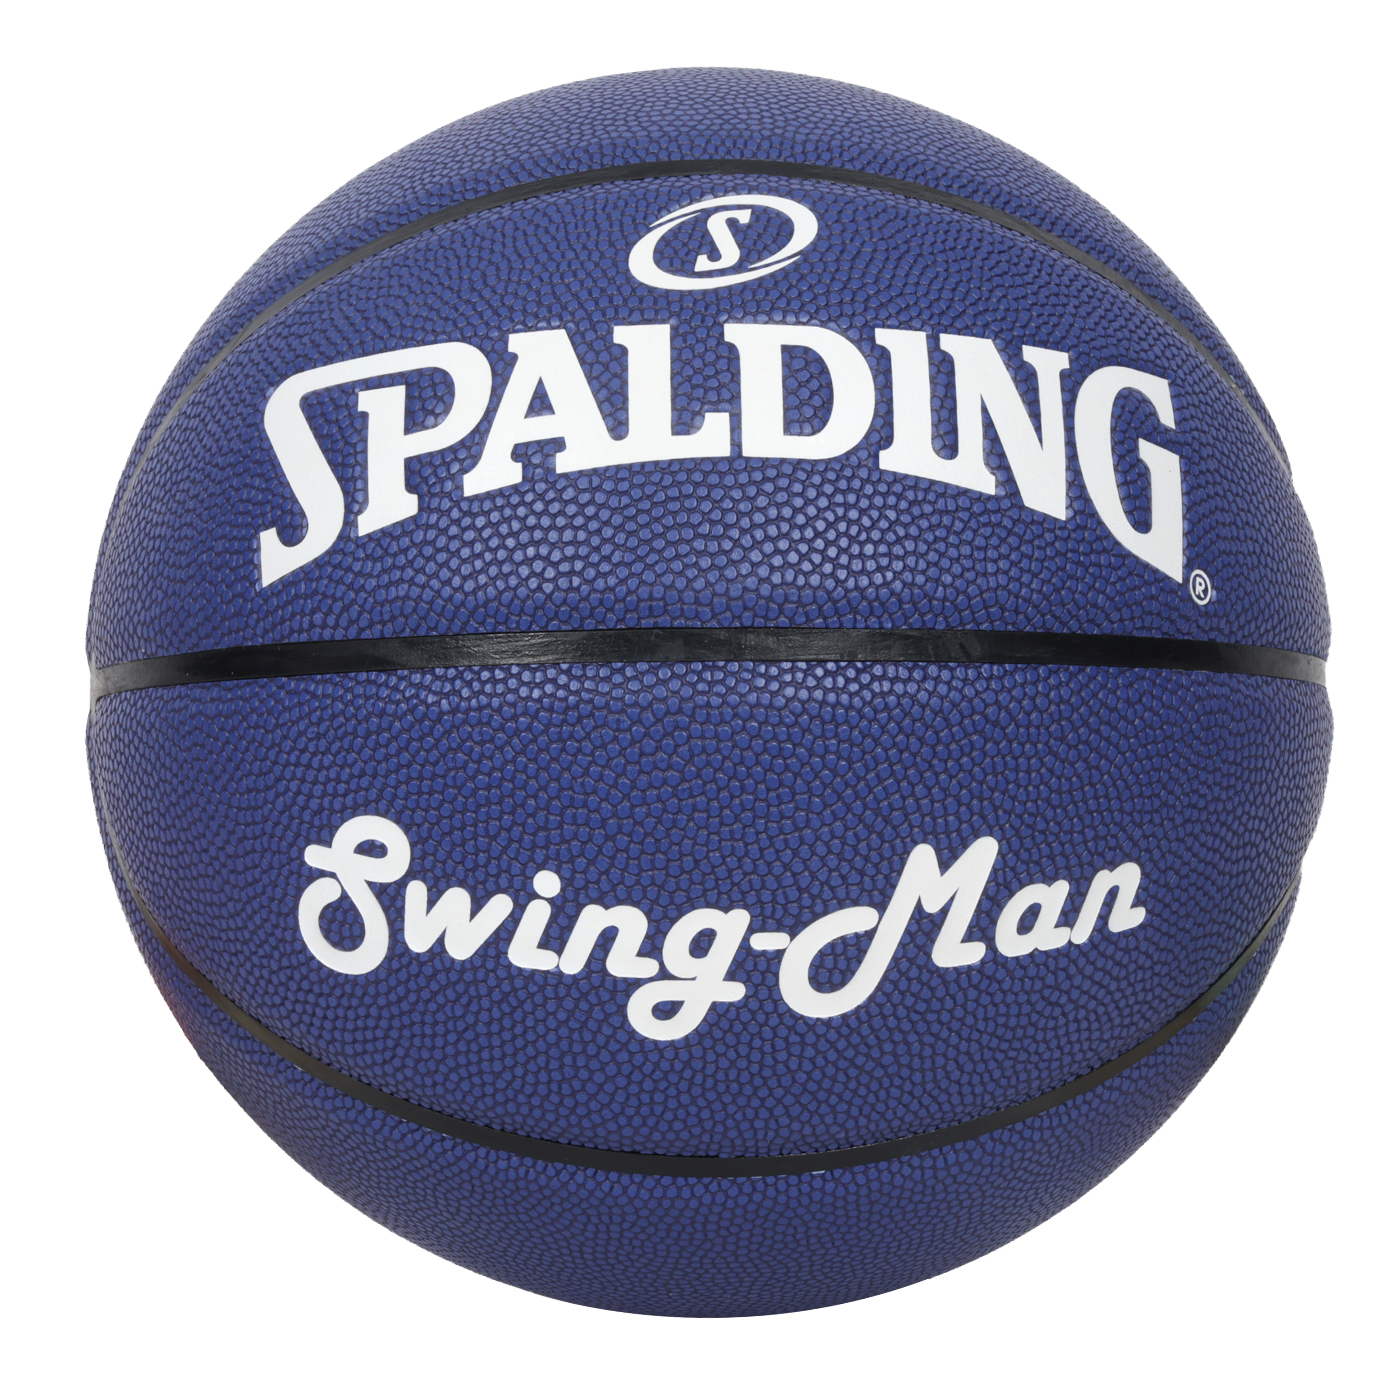 SPALDING Swingman系列#7合成皮籃球  SPB1131A7